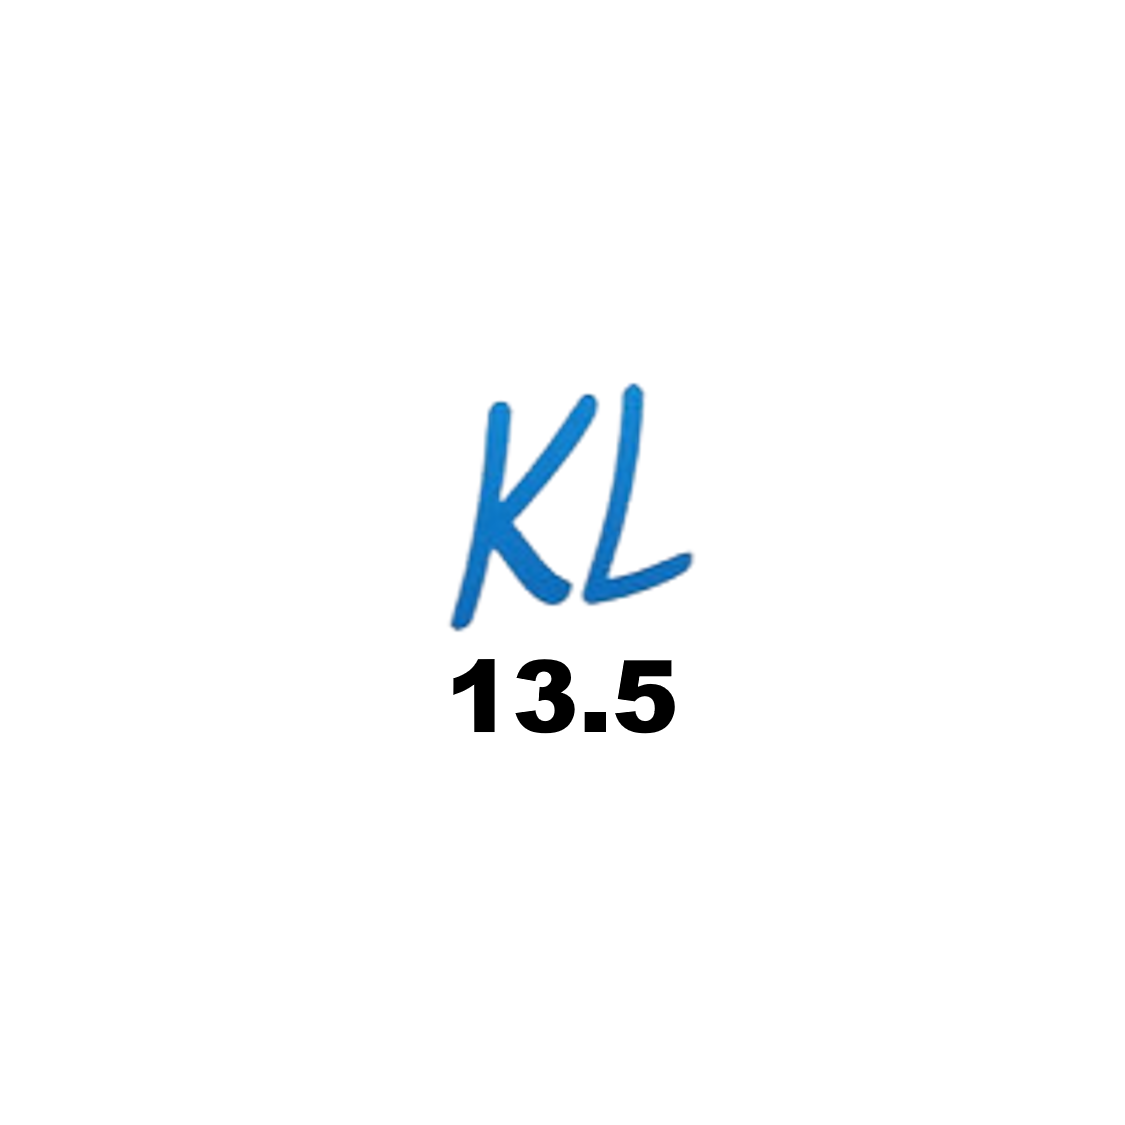 KL 13.5